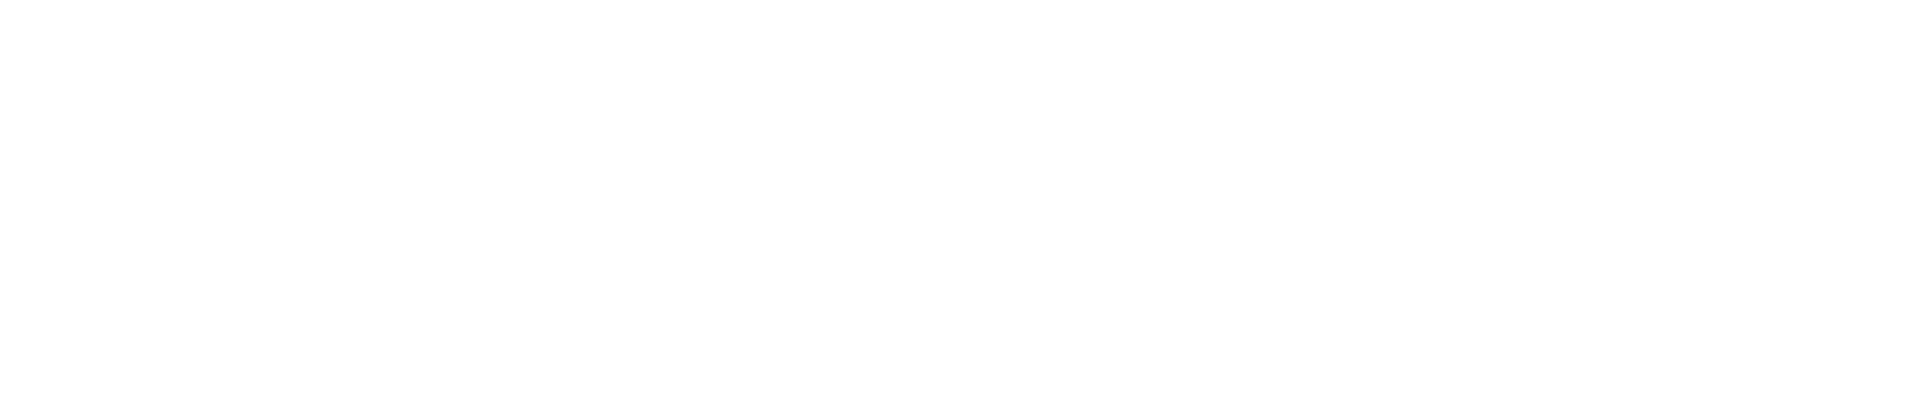 360安全云盘logo-360安全云盘